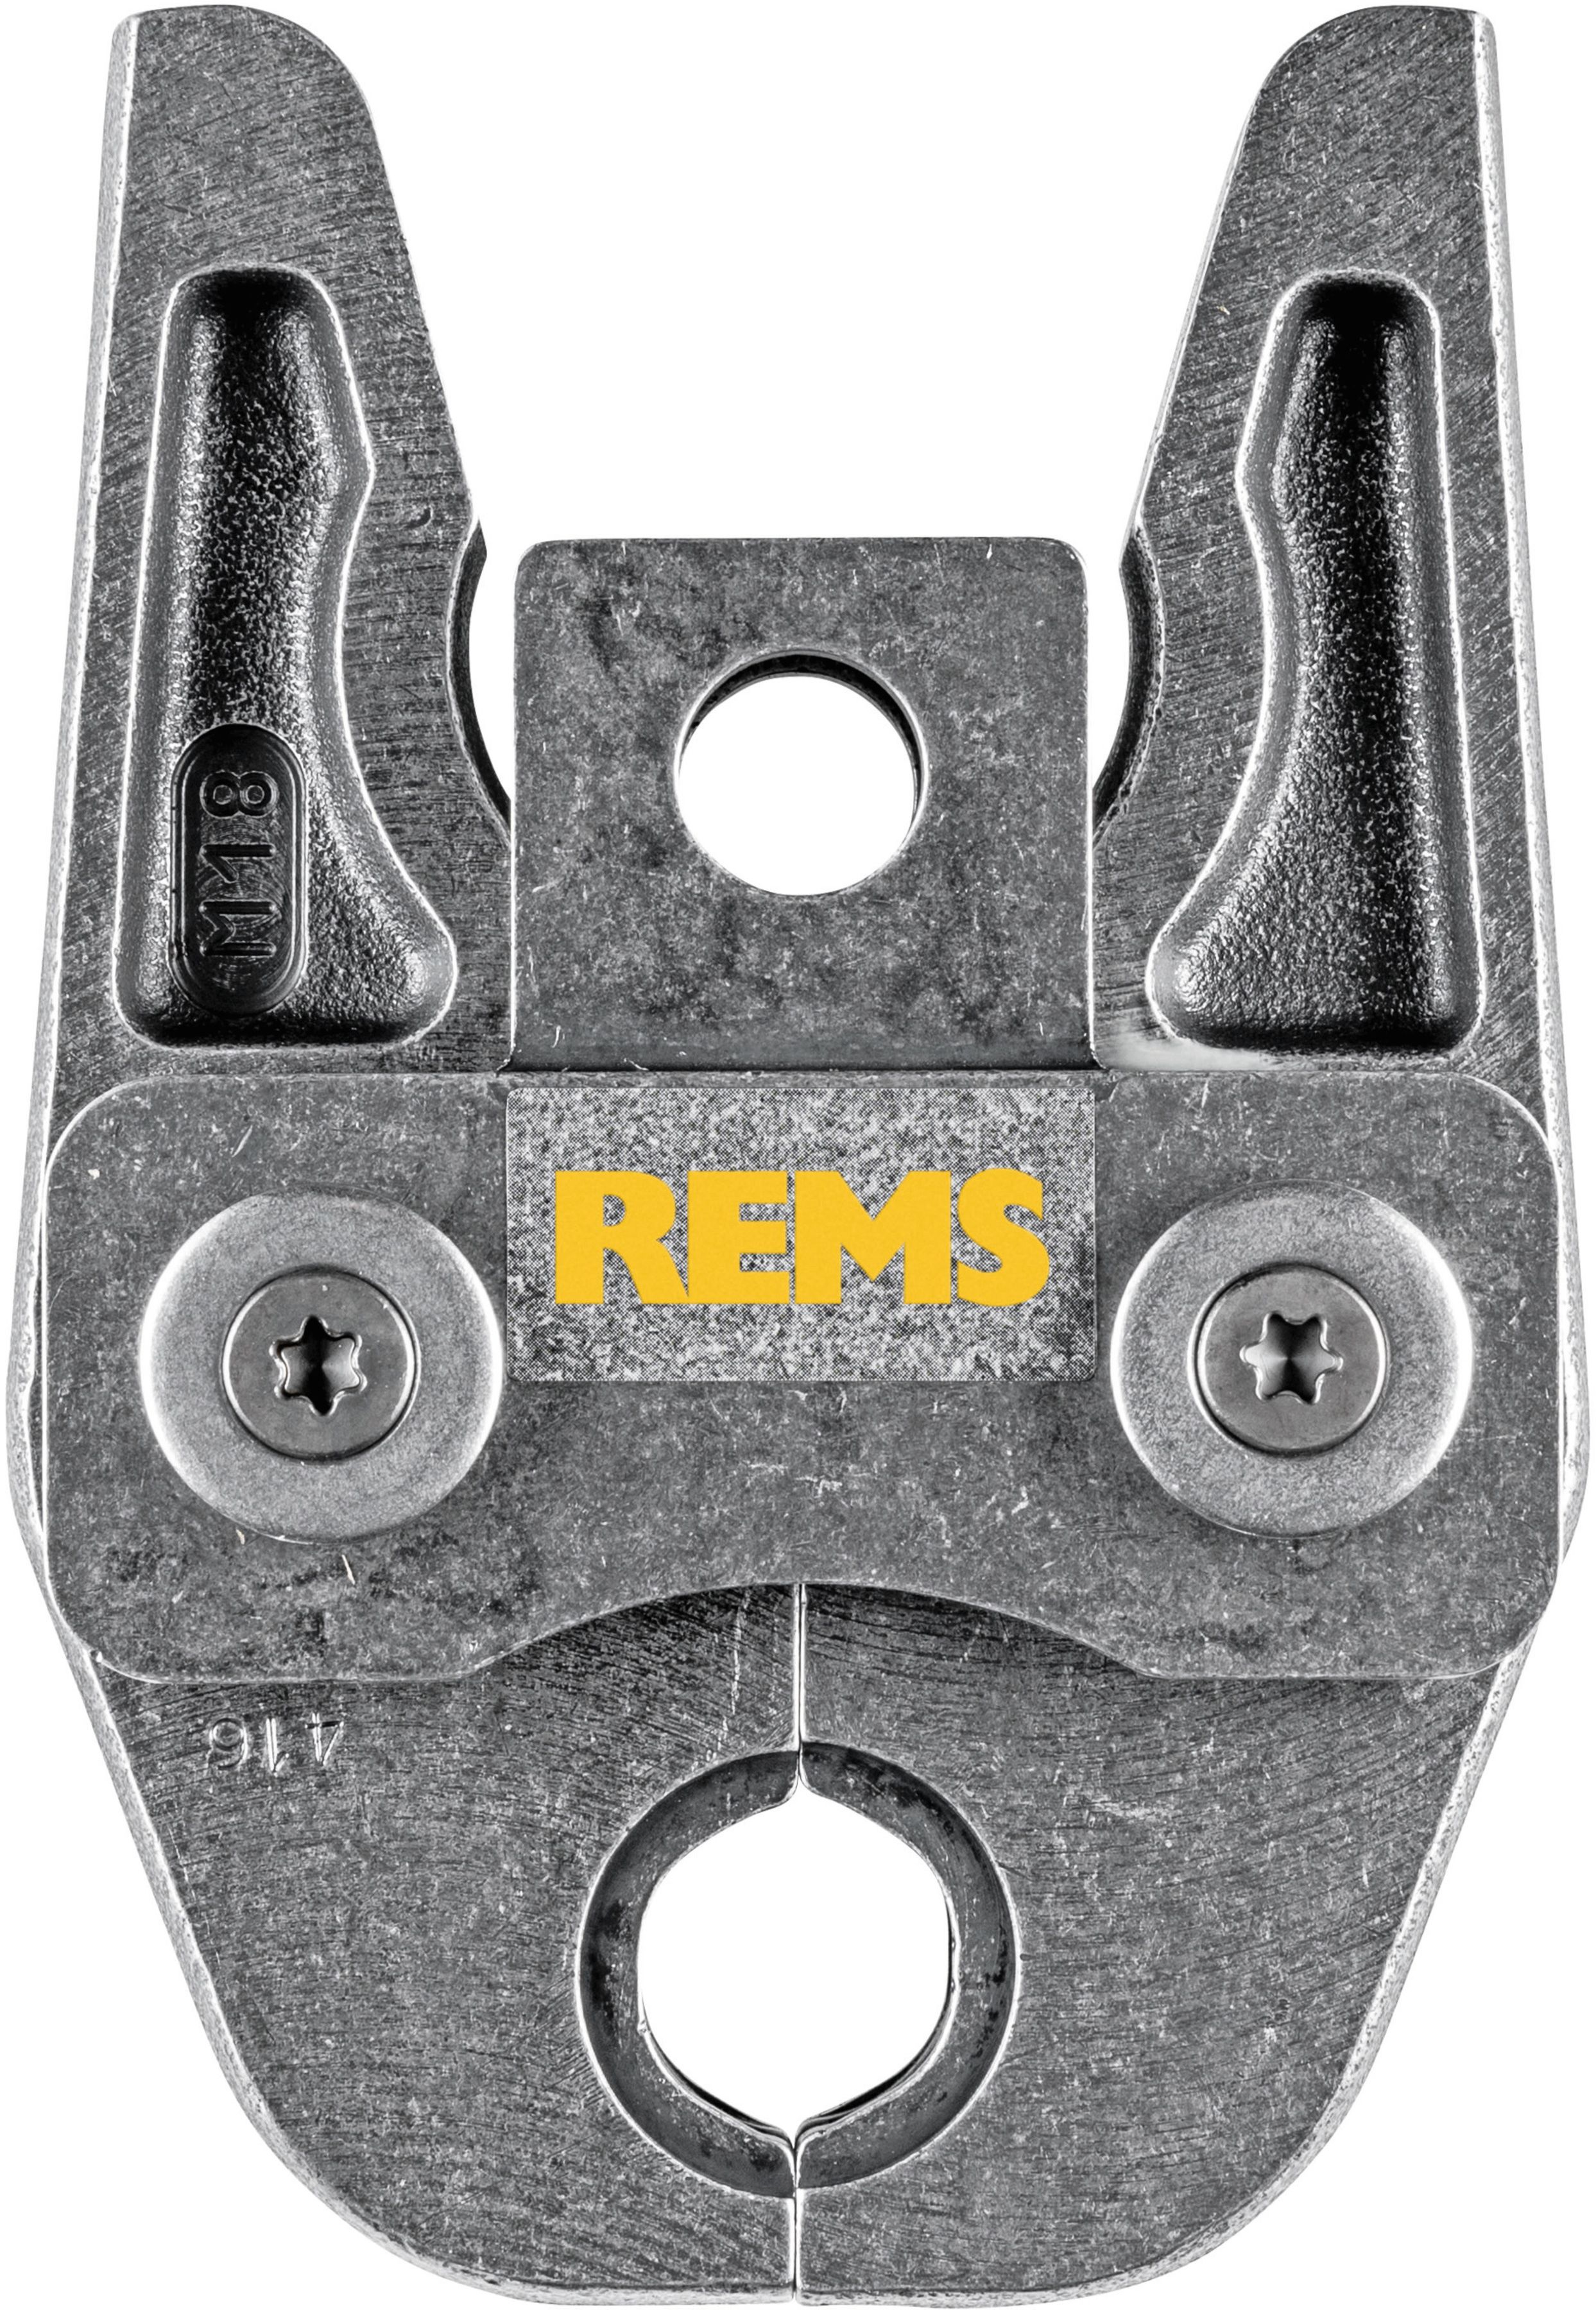 REMS Presszange 570170, M54 - Sanitärwerkzeuge